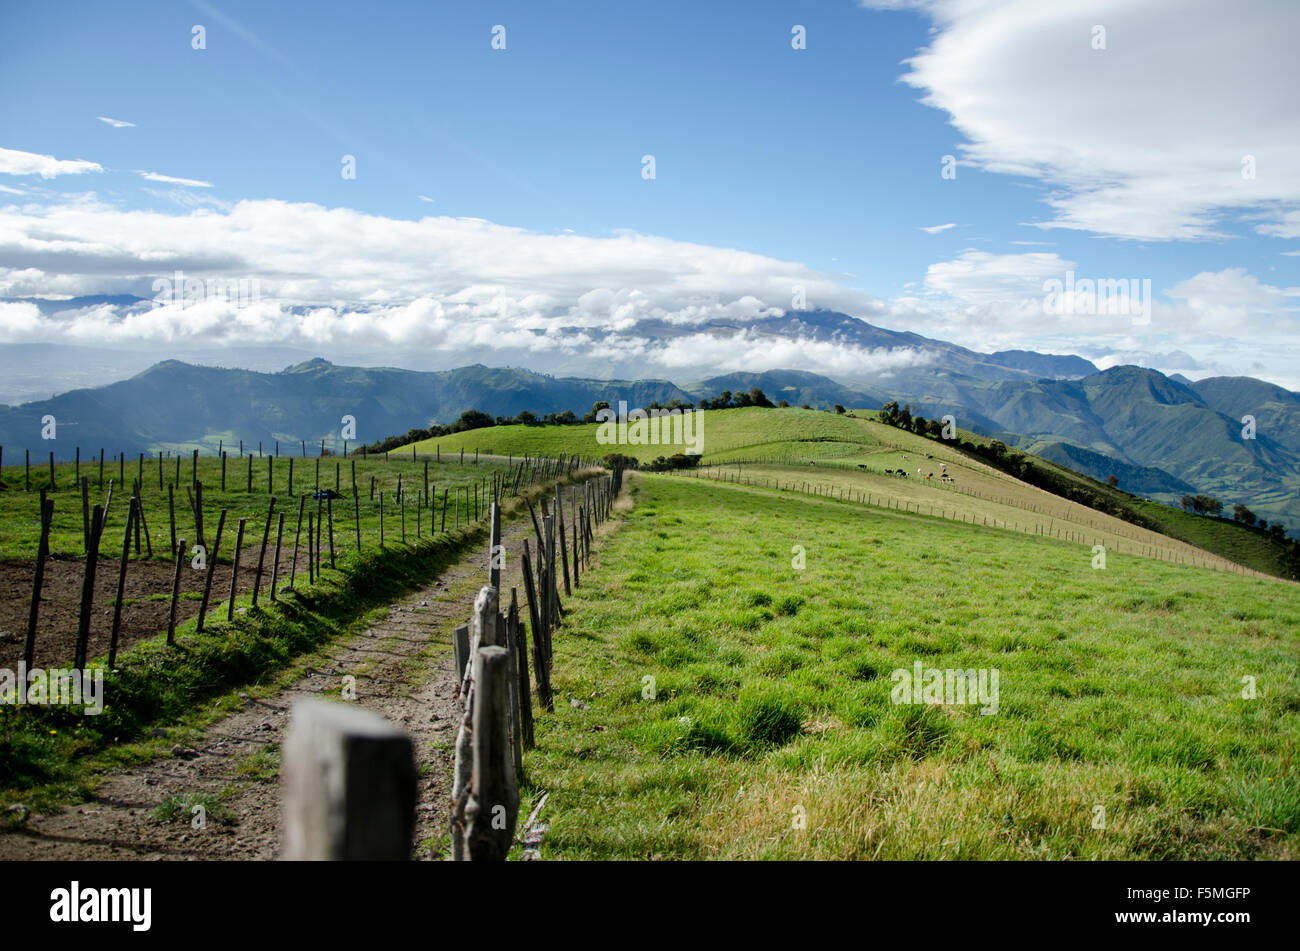 Farmland on the slopes of Guagua Pichincha Stock Photo